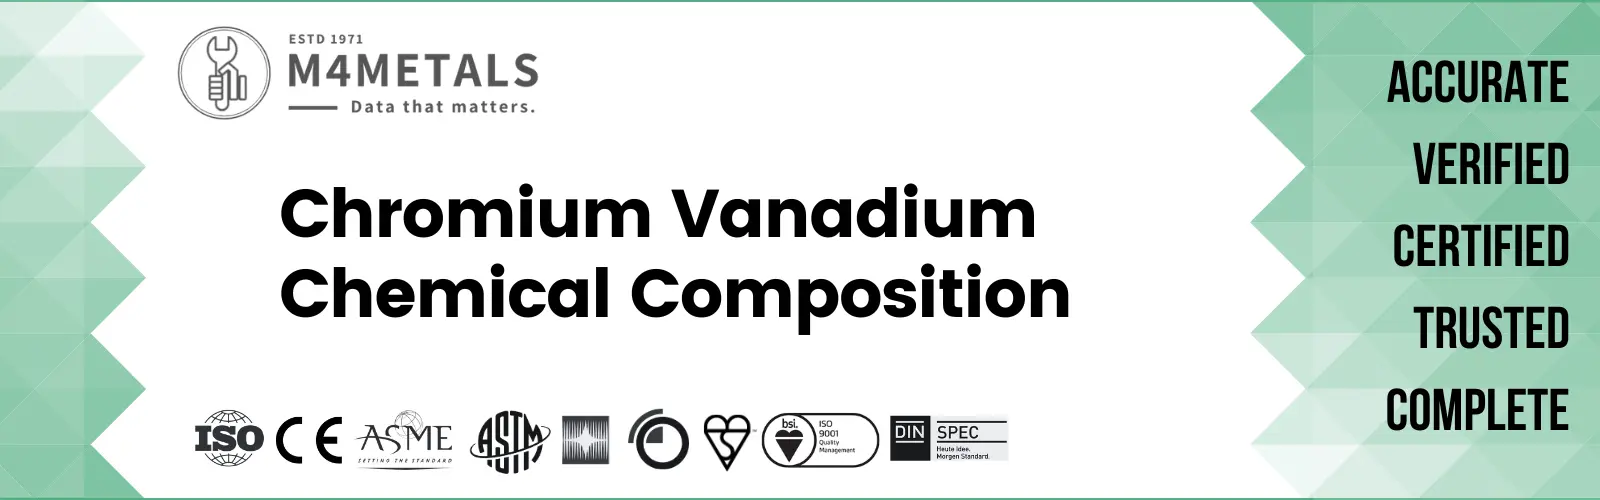 Chromium Vanadium Chemical Composition